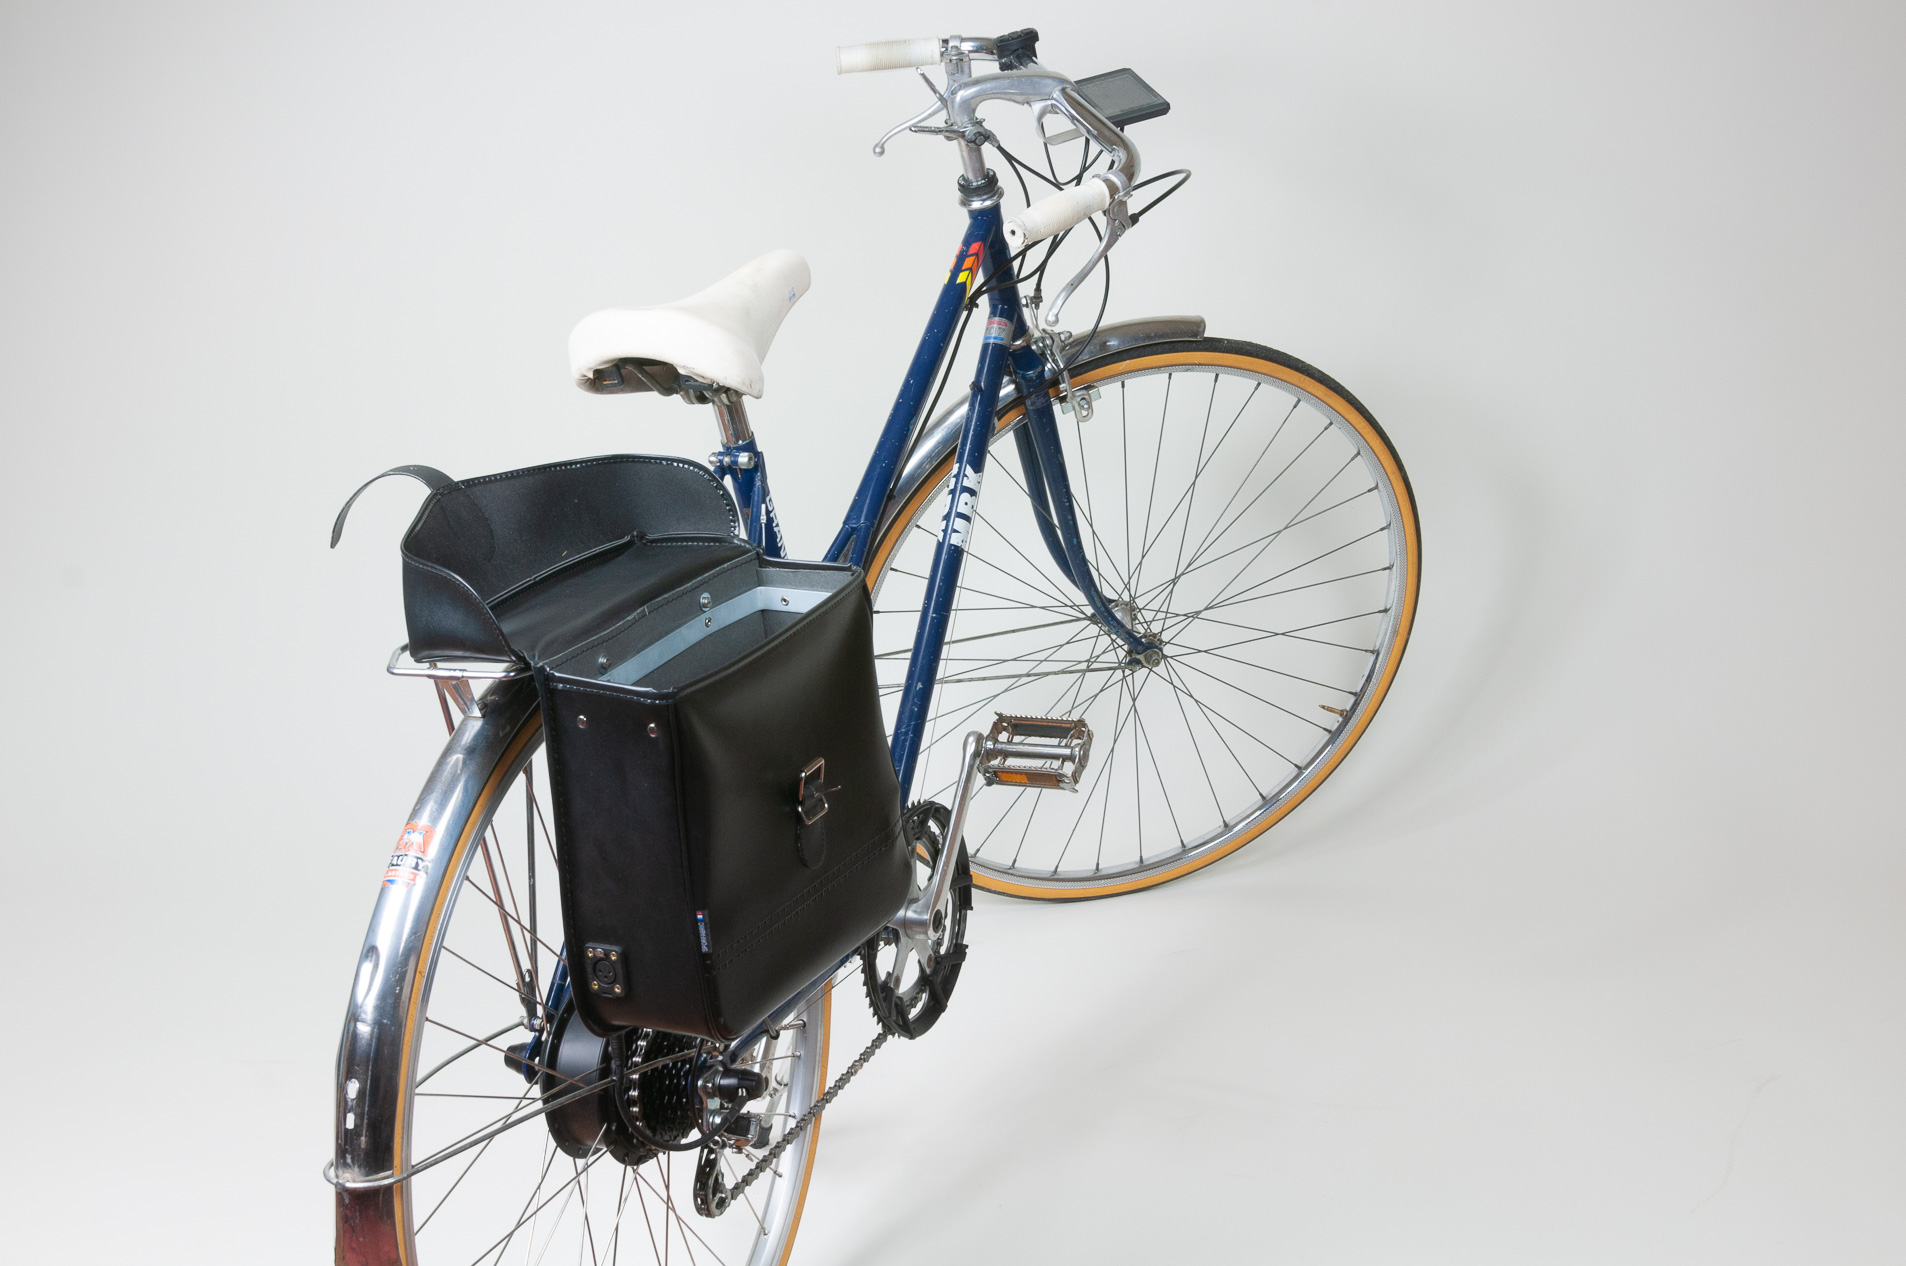 MBK Grand sport - transformation en vélo électrique - vu intérieur de la sacoche.